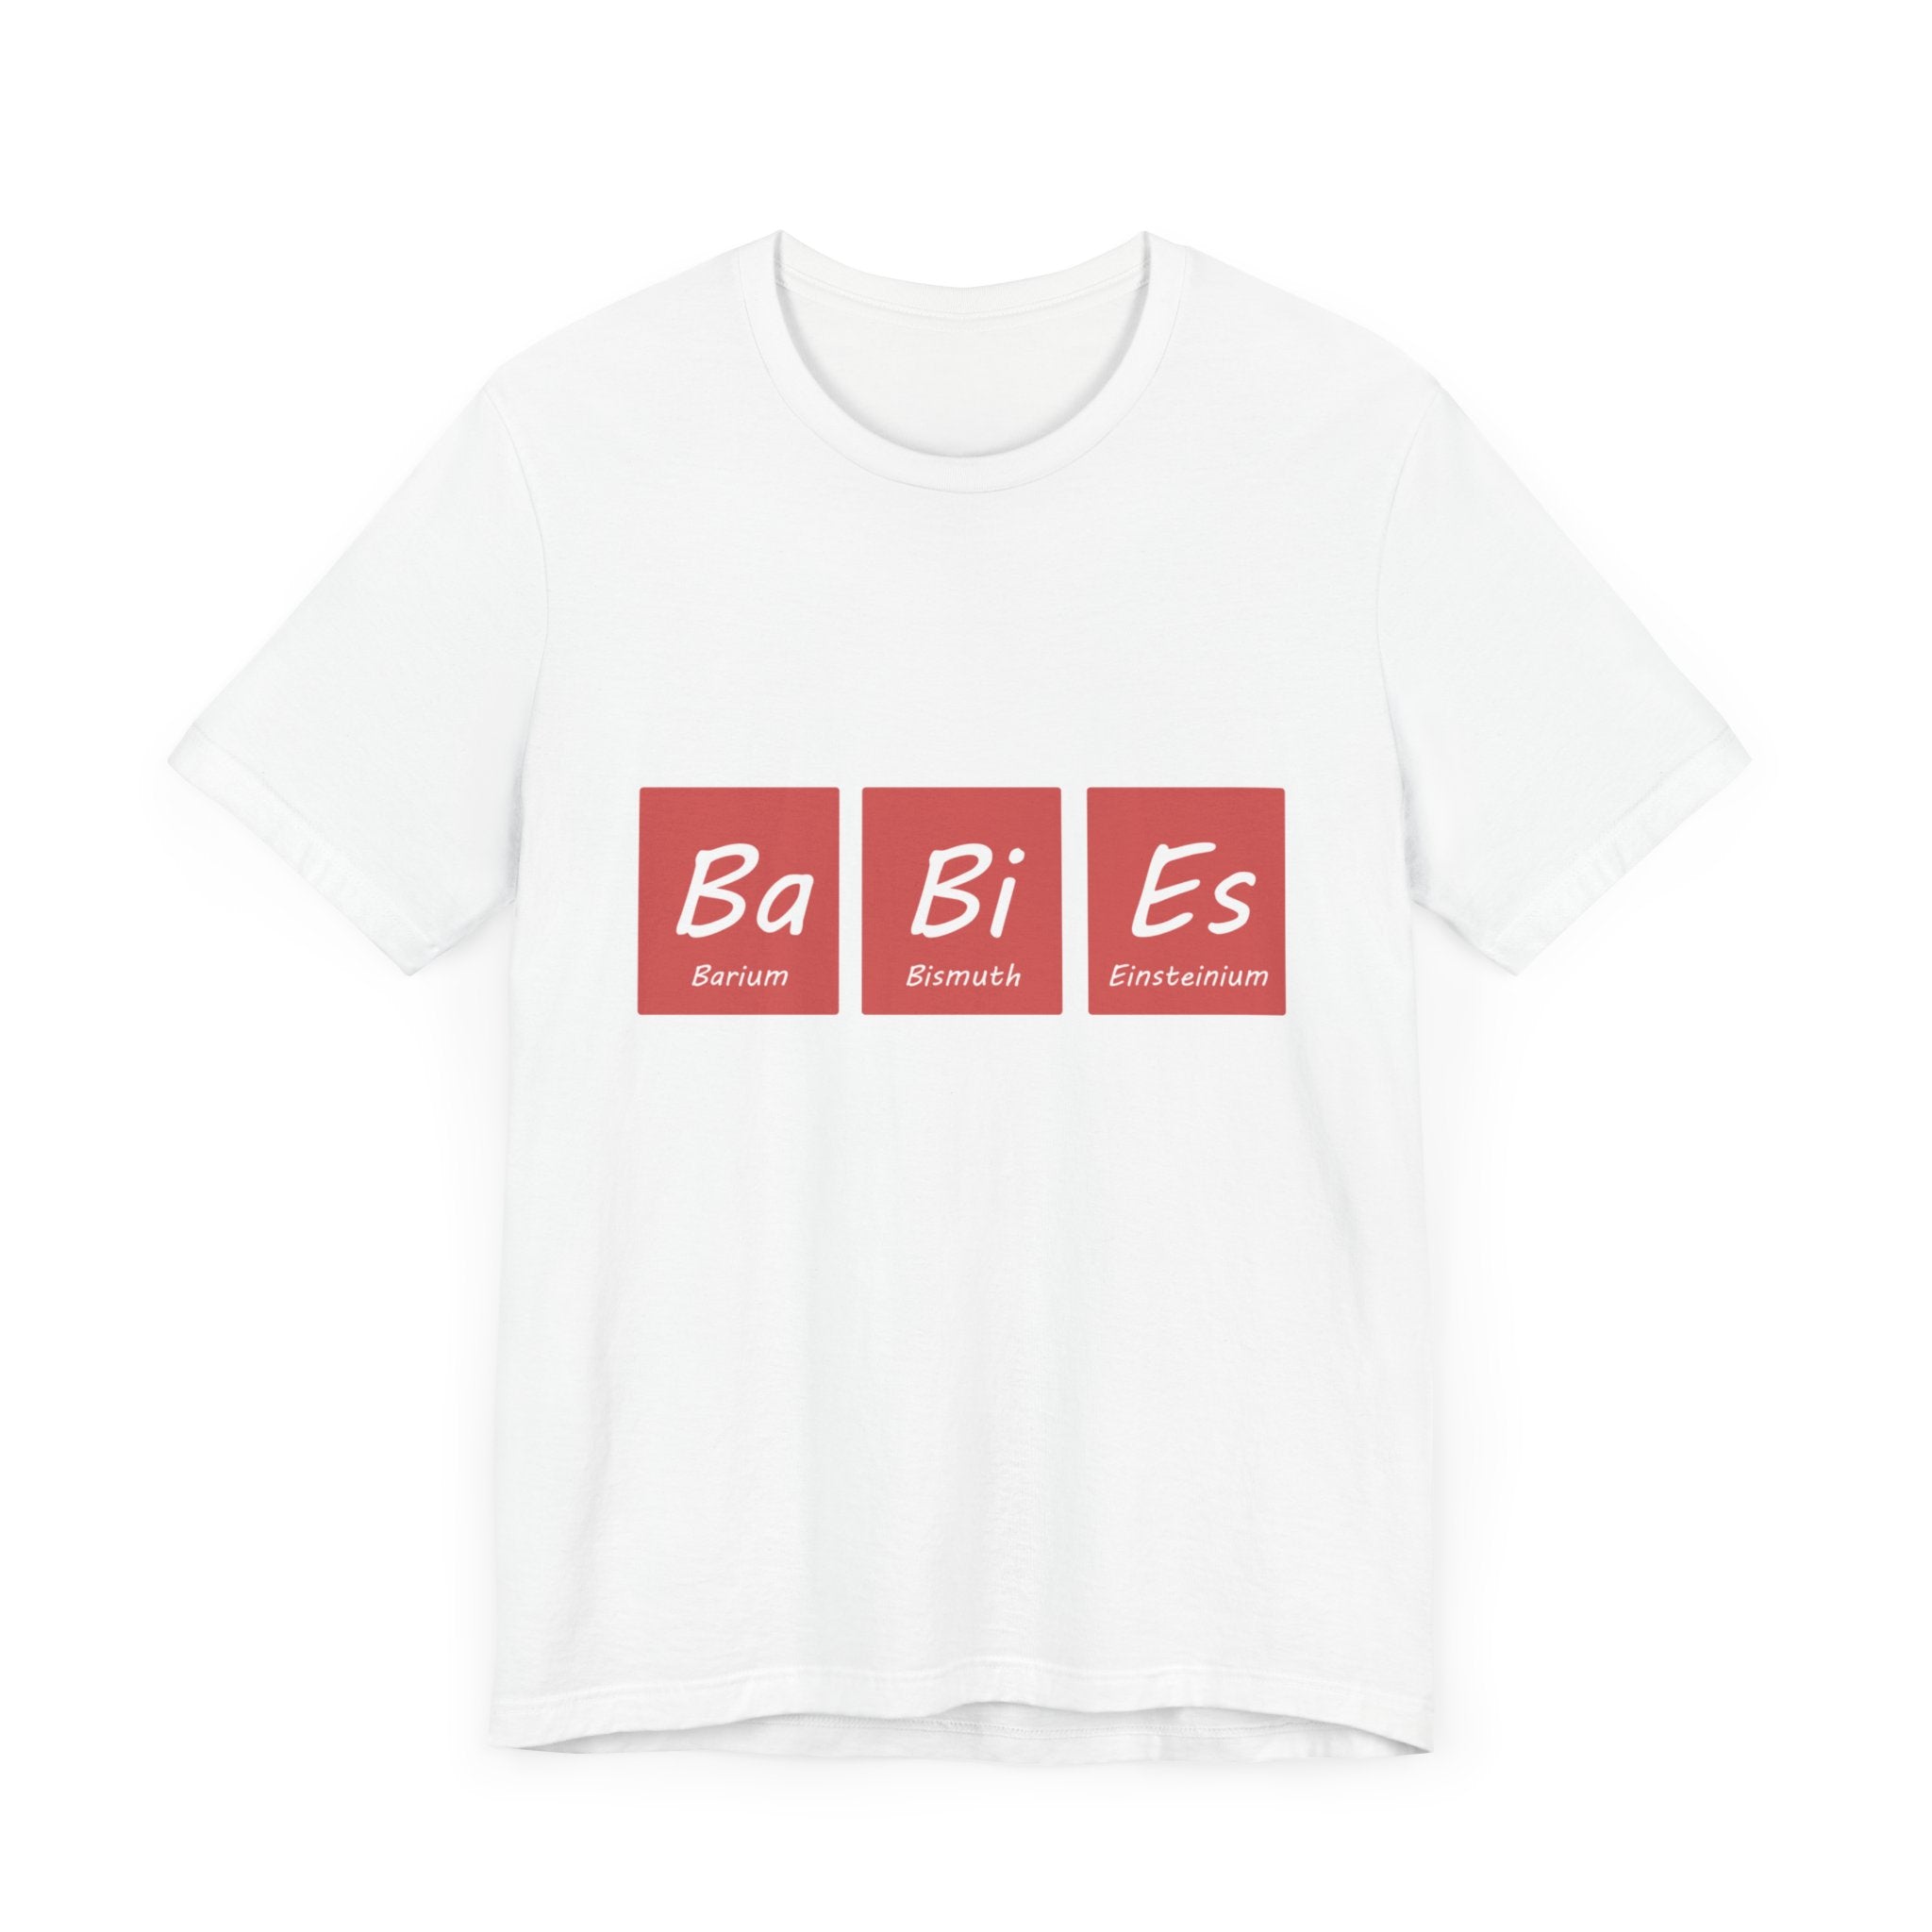 Ba-Bi-Es - T-Shirt